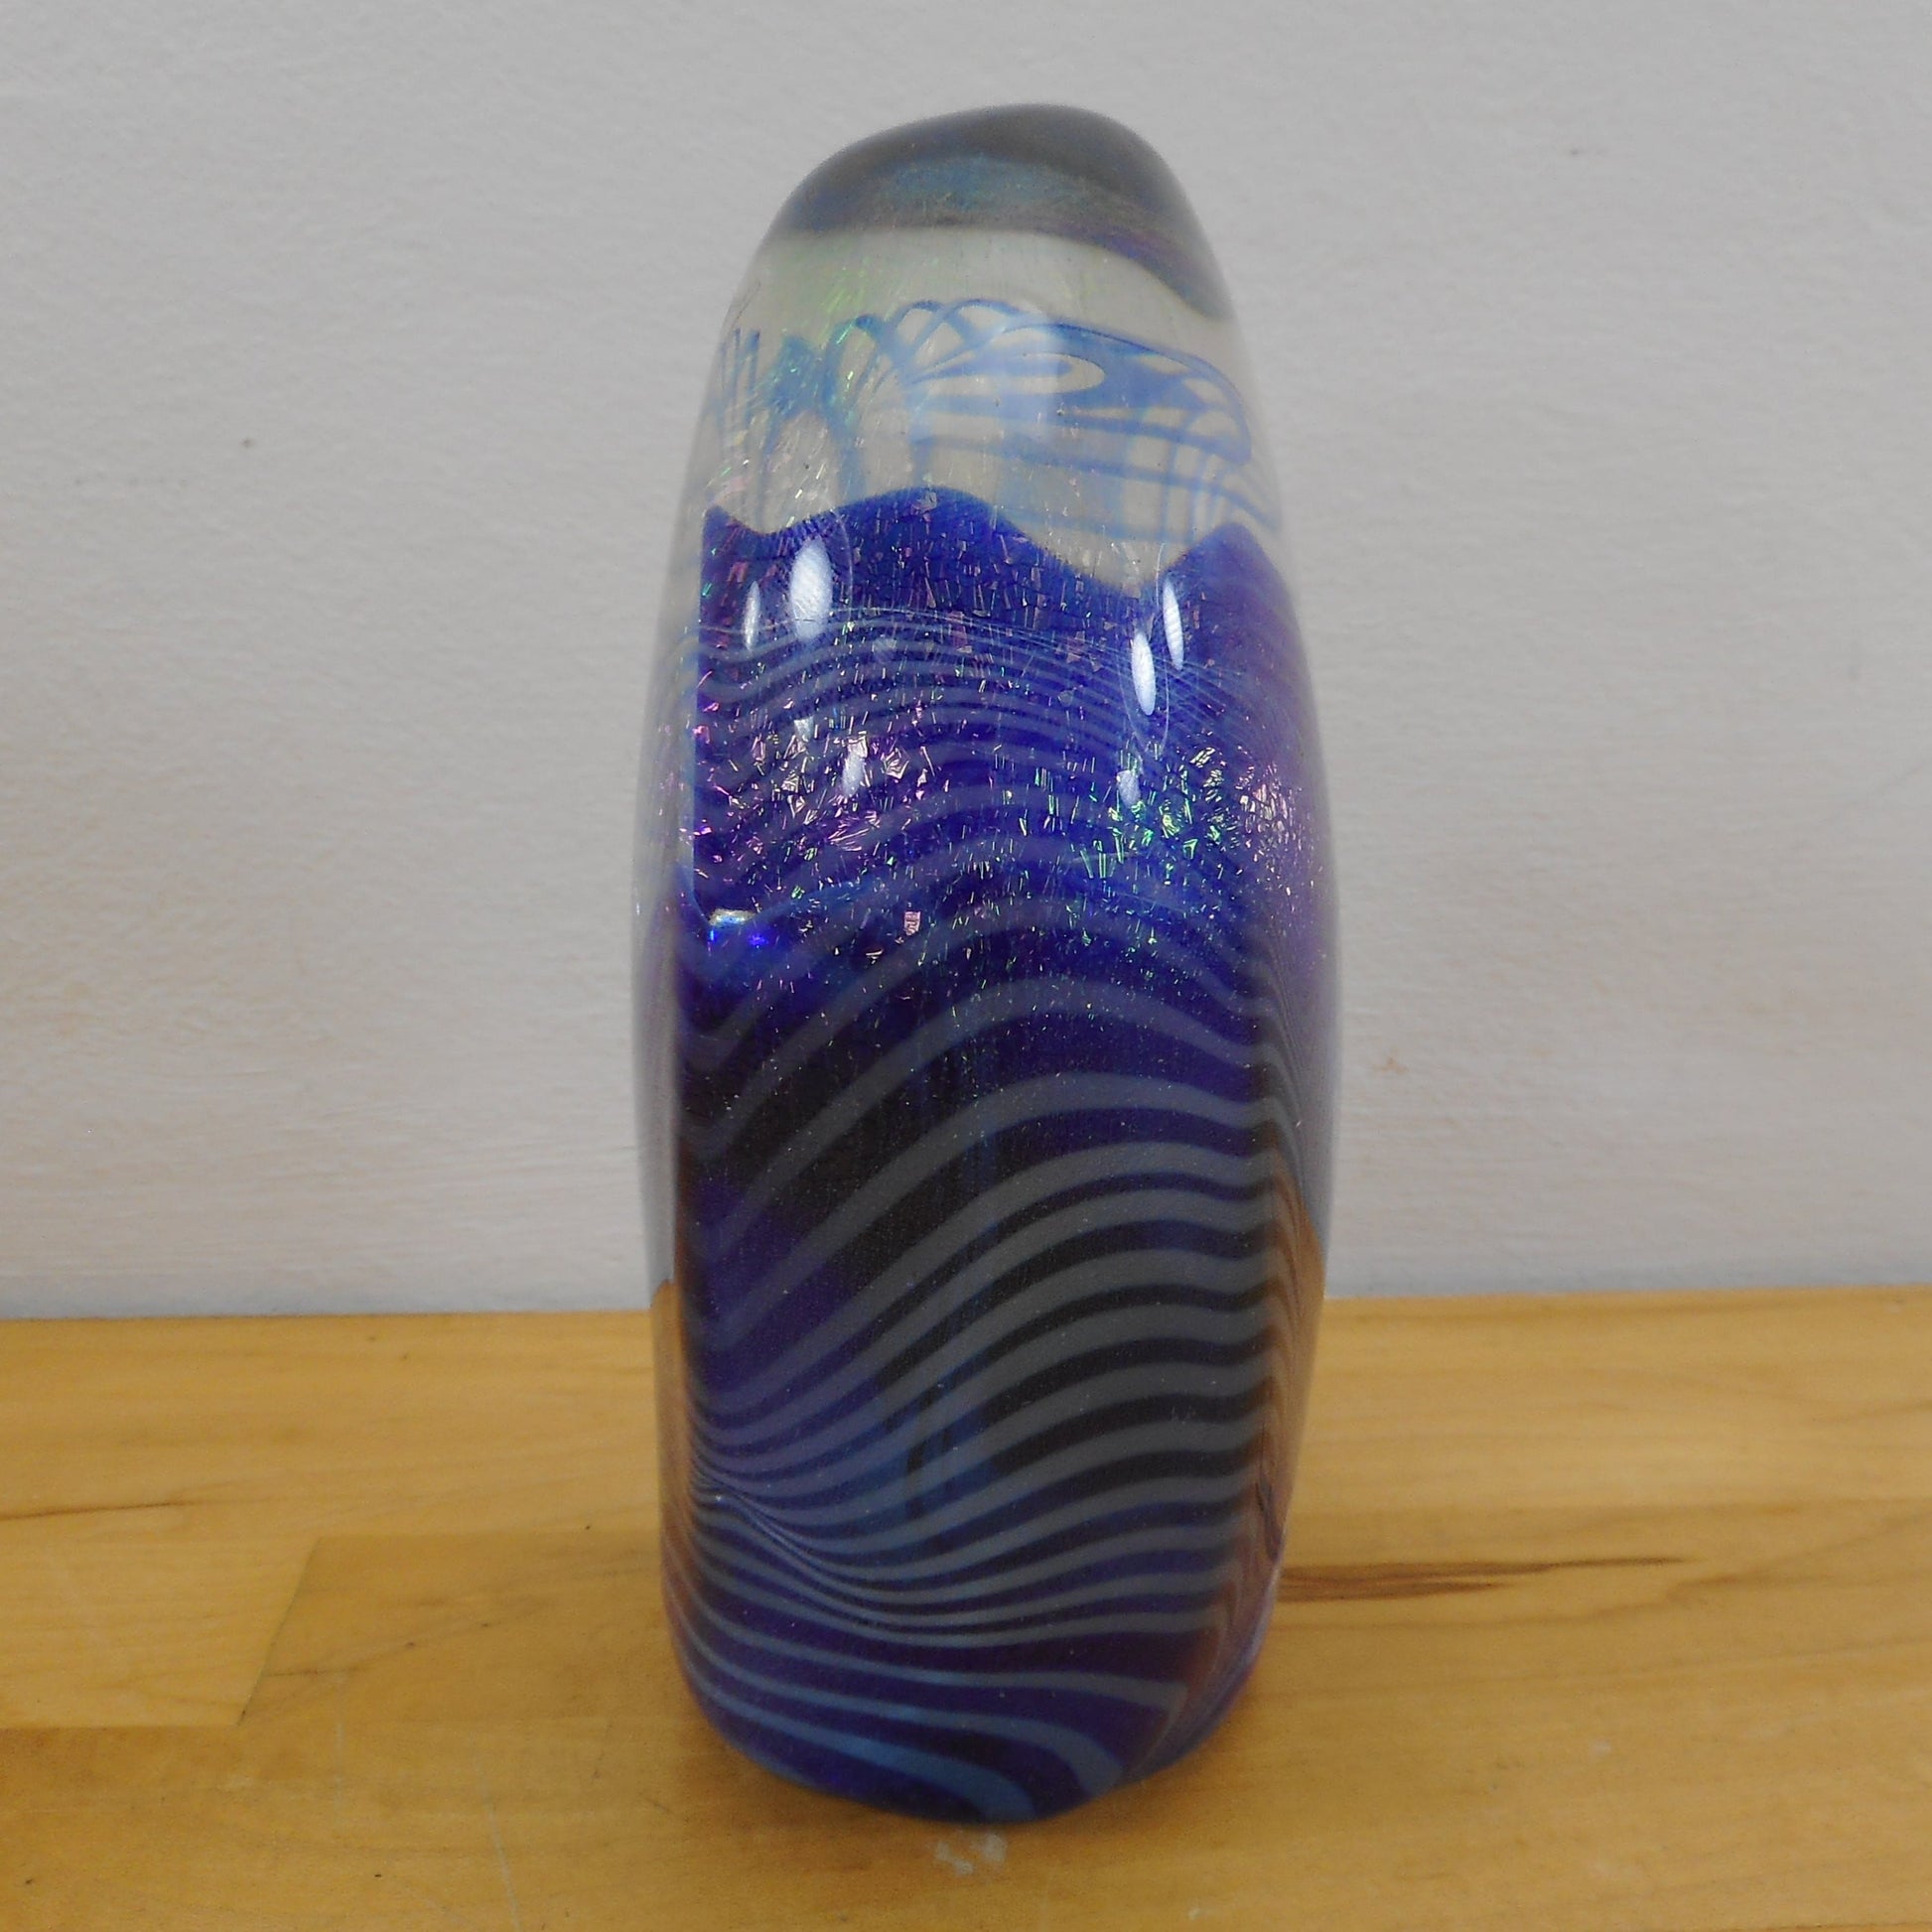 Robert Eickholt Signed 1983 Iridescent Art Glass Paperweight - Large 6" Blue Hand